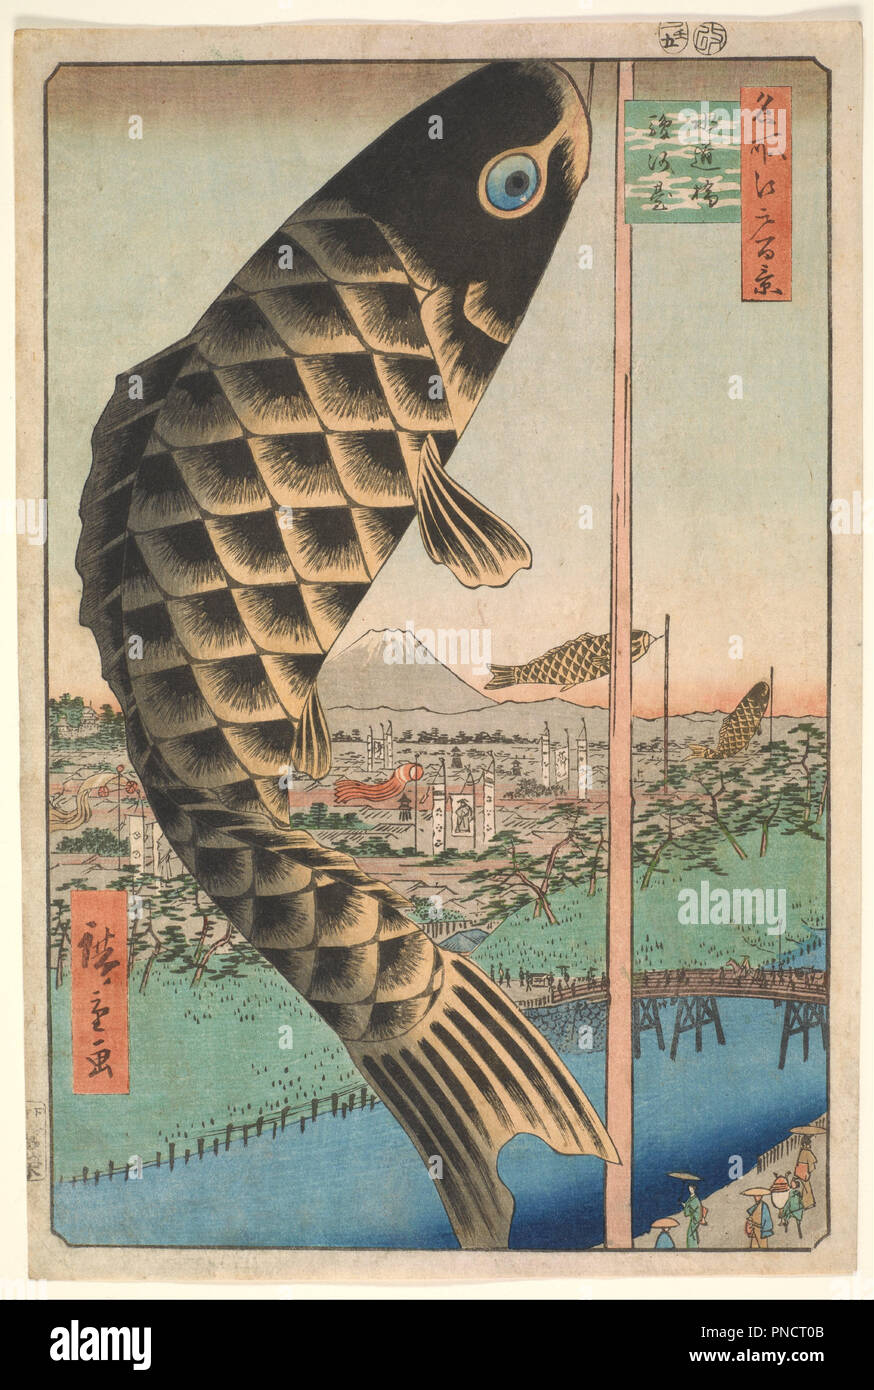 Suido Bridge et Surugadai, de la série Cent vues célèbres d'Edo (Edo Meisho Hyakkei). Date/période : 1857, 5e mois lunaire. L'impression. Gravure sur bois, encre et couleur sur papier. Hauteur : 356 mm (14.01 in) ; Largeur : 240 mm (9,44 in). Auteur : Hiroshige. UTAGAWA HIROSHIGE. Banque D'Images